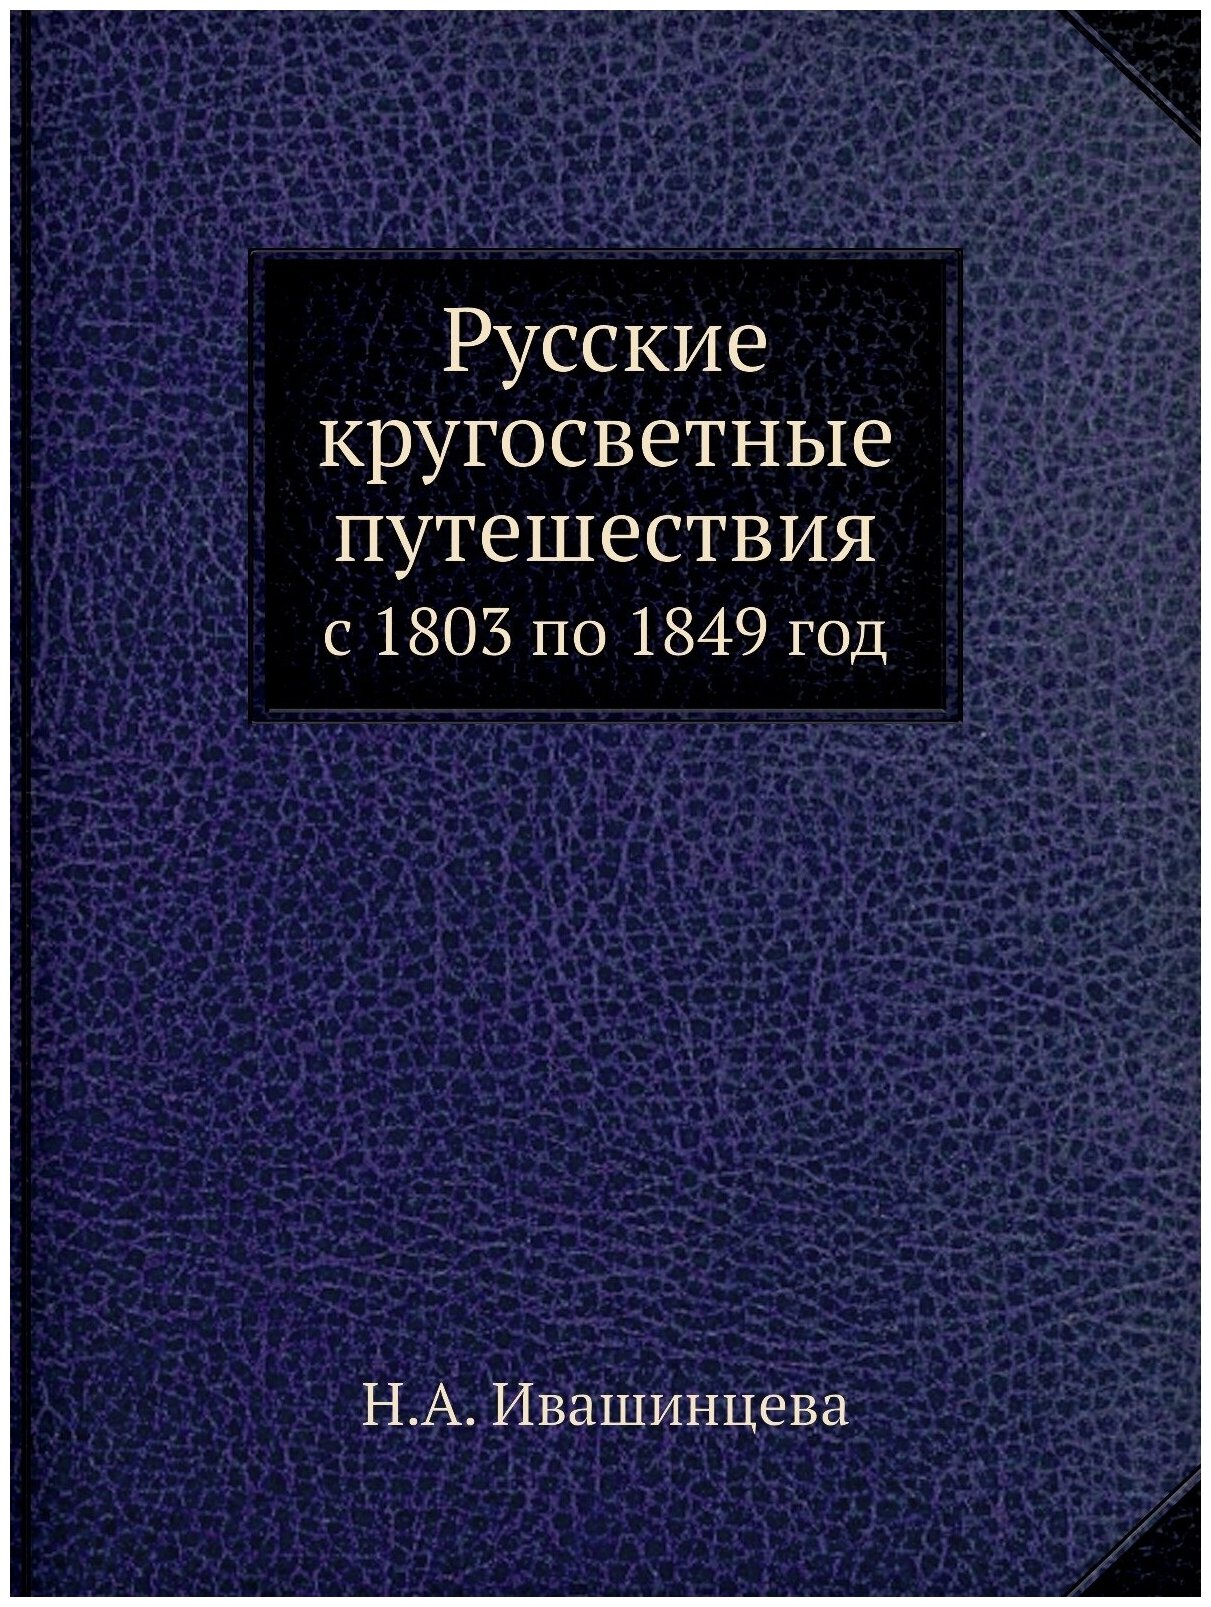 Русские кругосветные путешествия. с 1803 по 1849 год